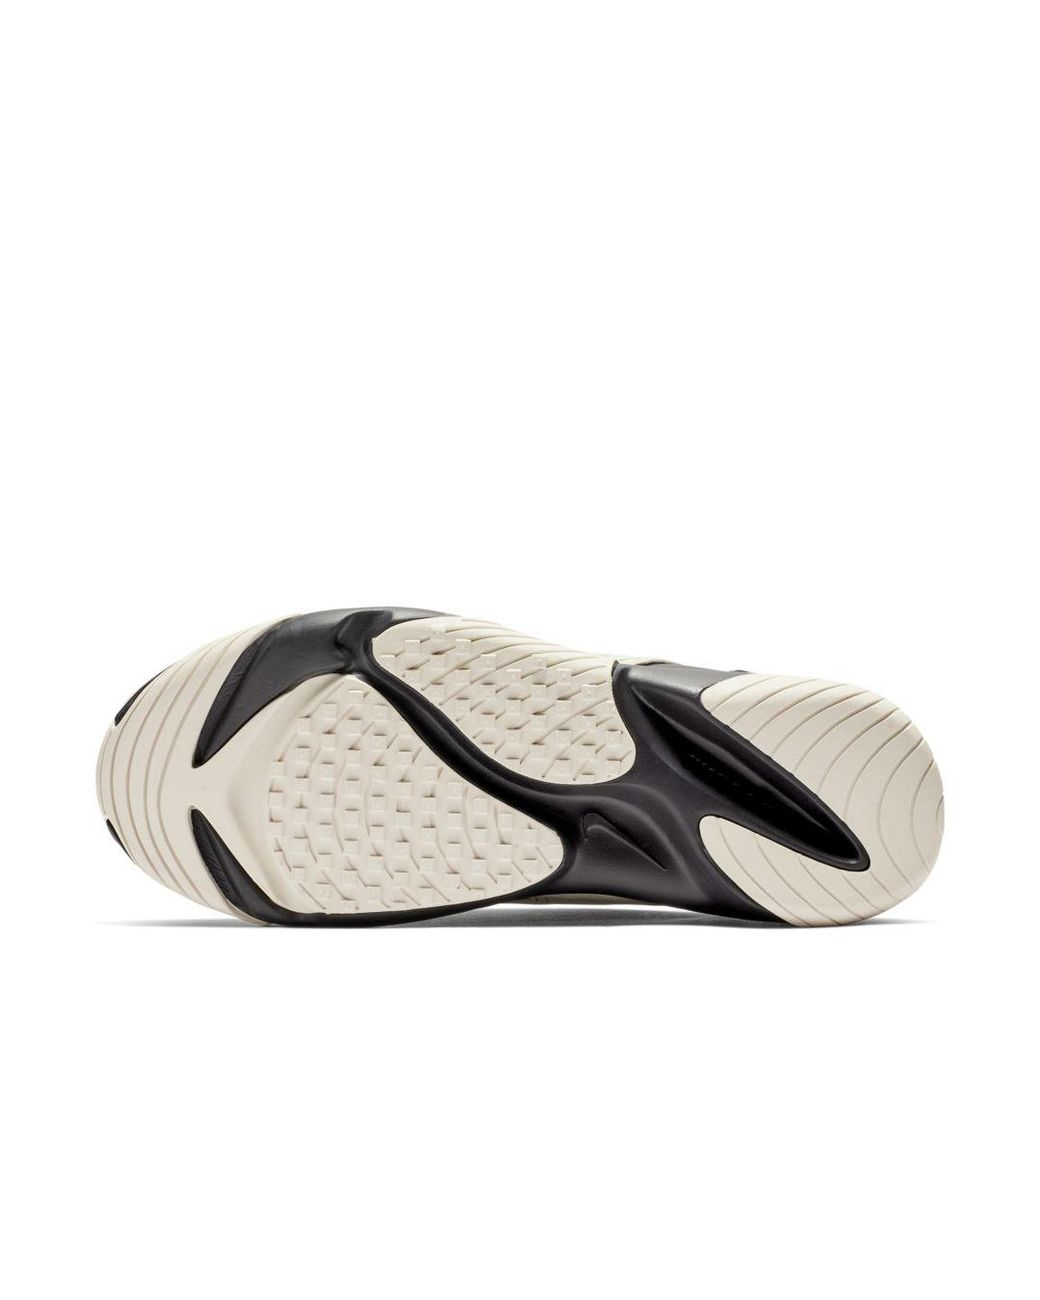 Nike Zoom 2k Shoe in Black (Gray) | Lyst